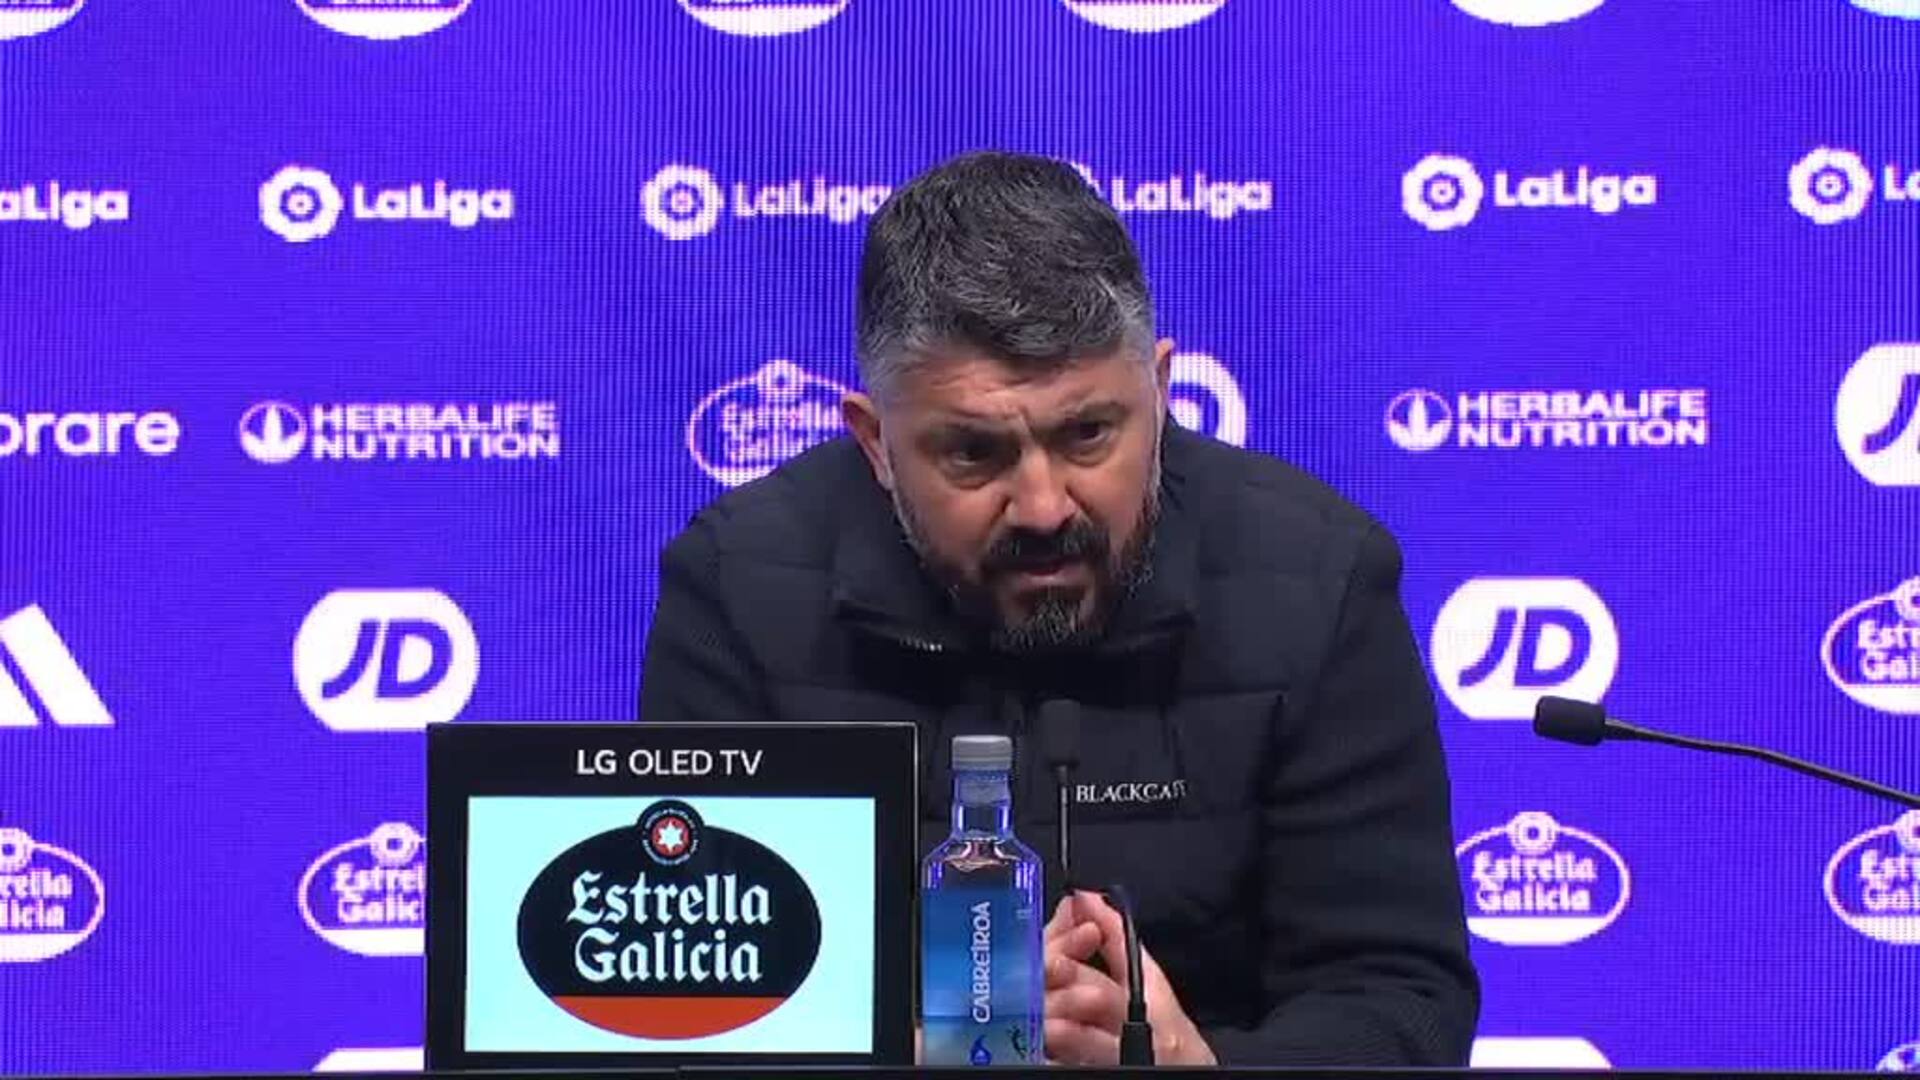 Gattuso, en la cuerda floja, sobre su continuidad en el Valencia: "Tengo que respetar cualquier decisión"